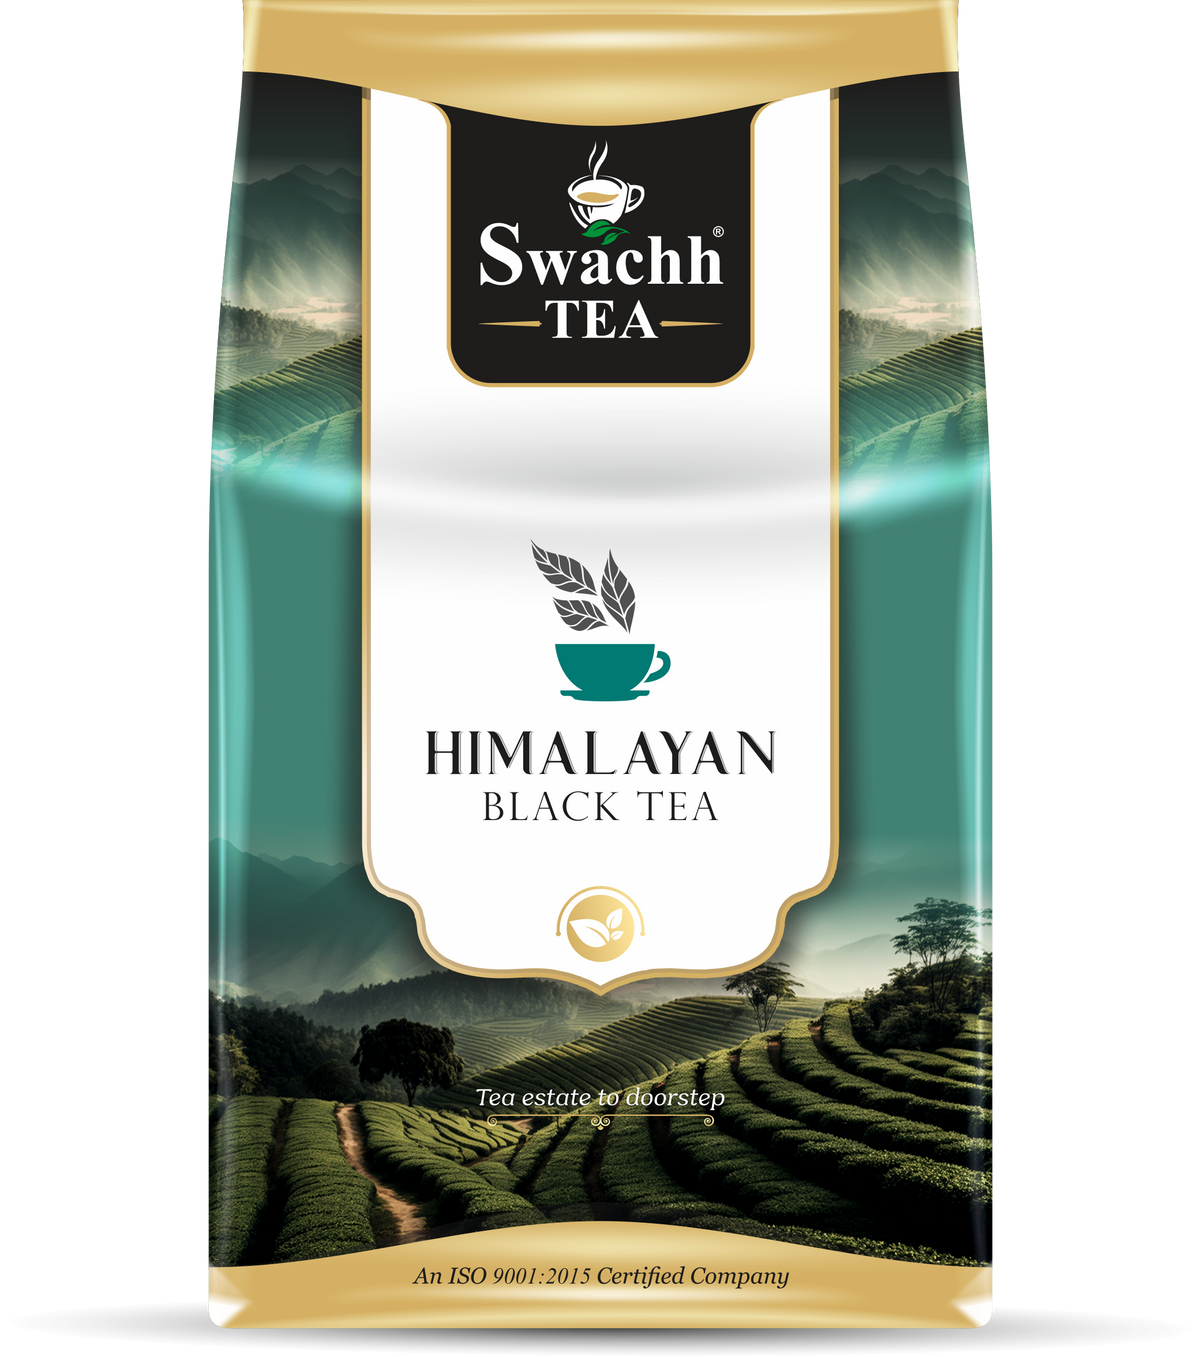 Himalayan black tea